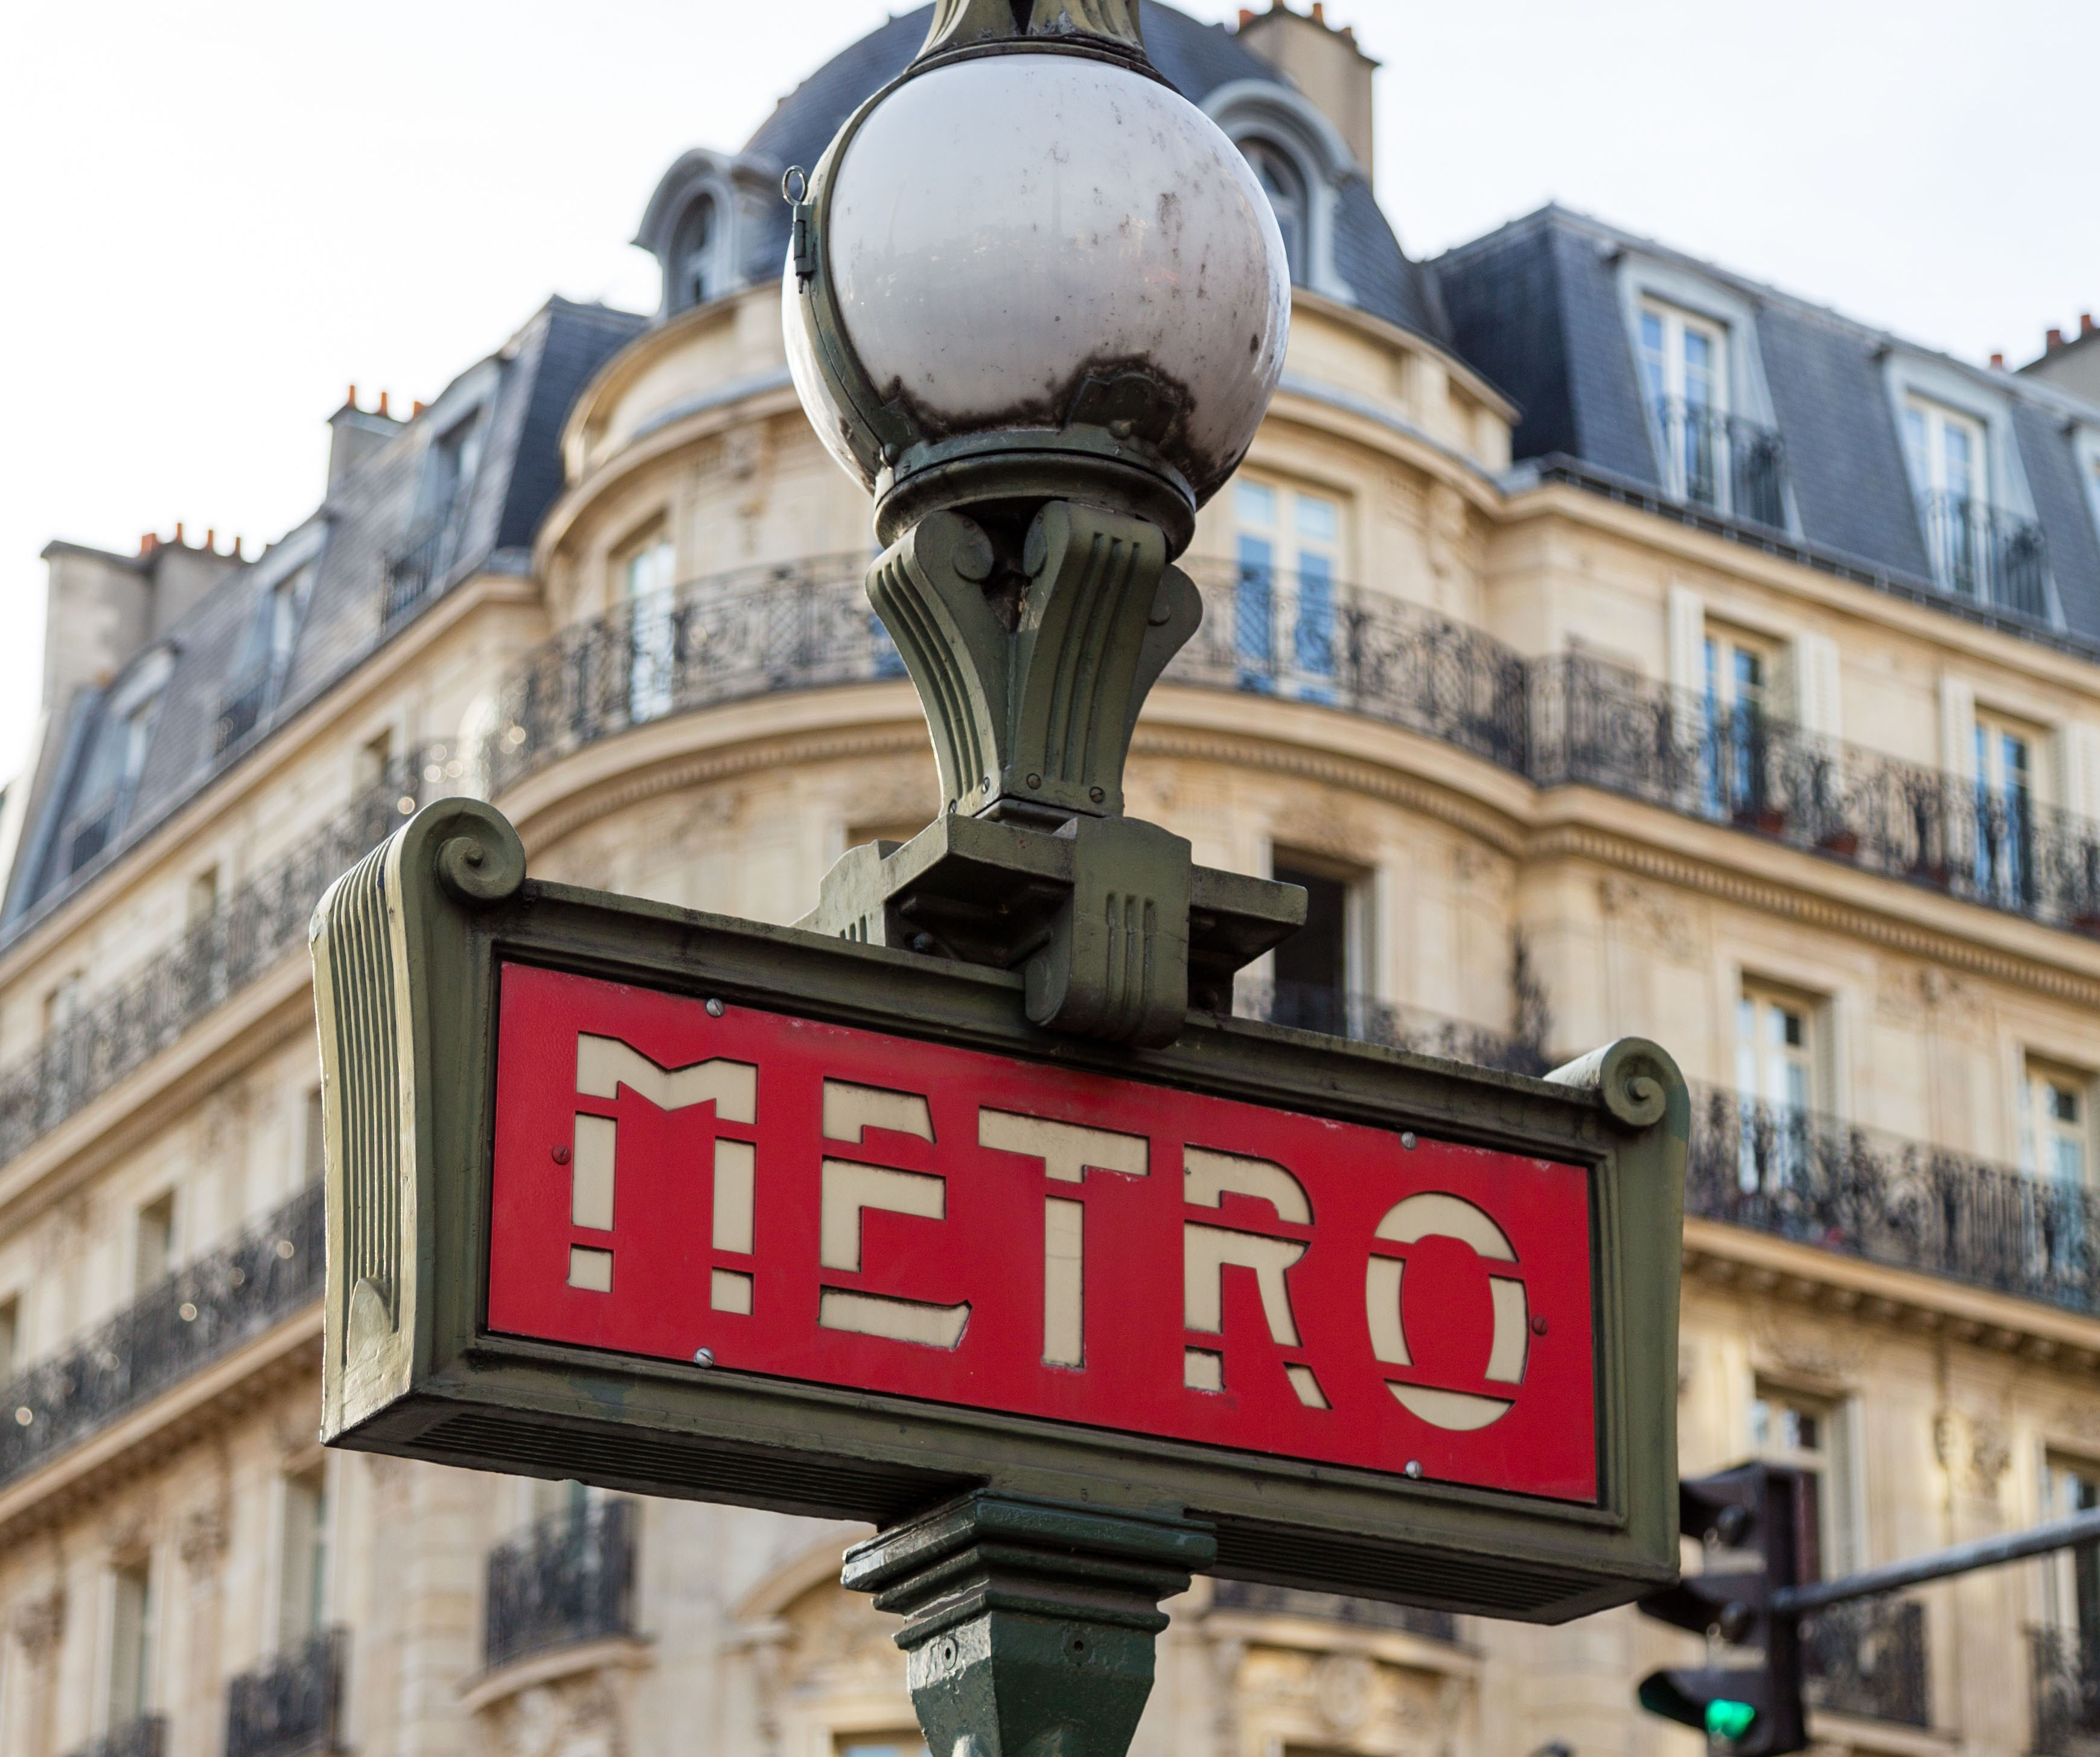 Metro sign in Paris